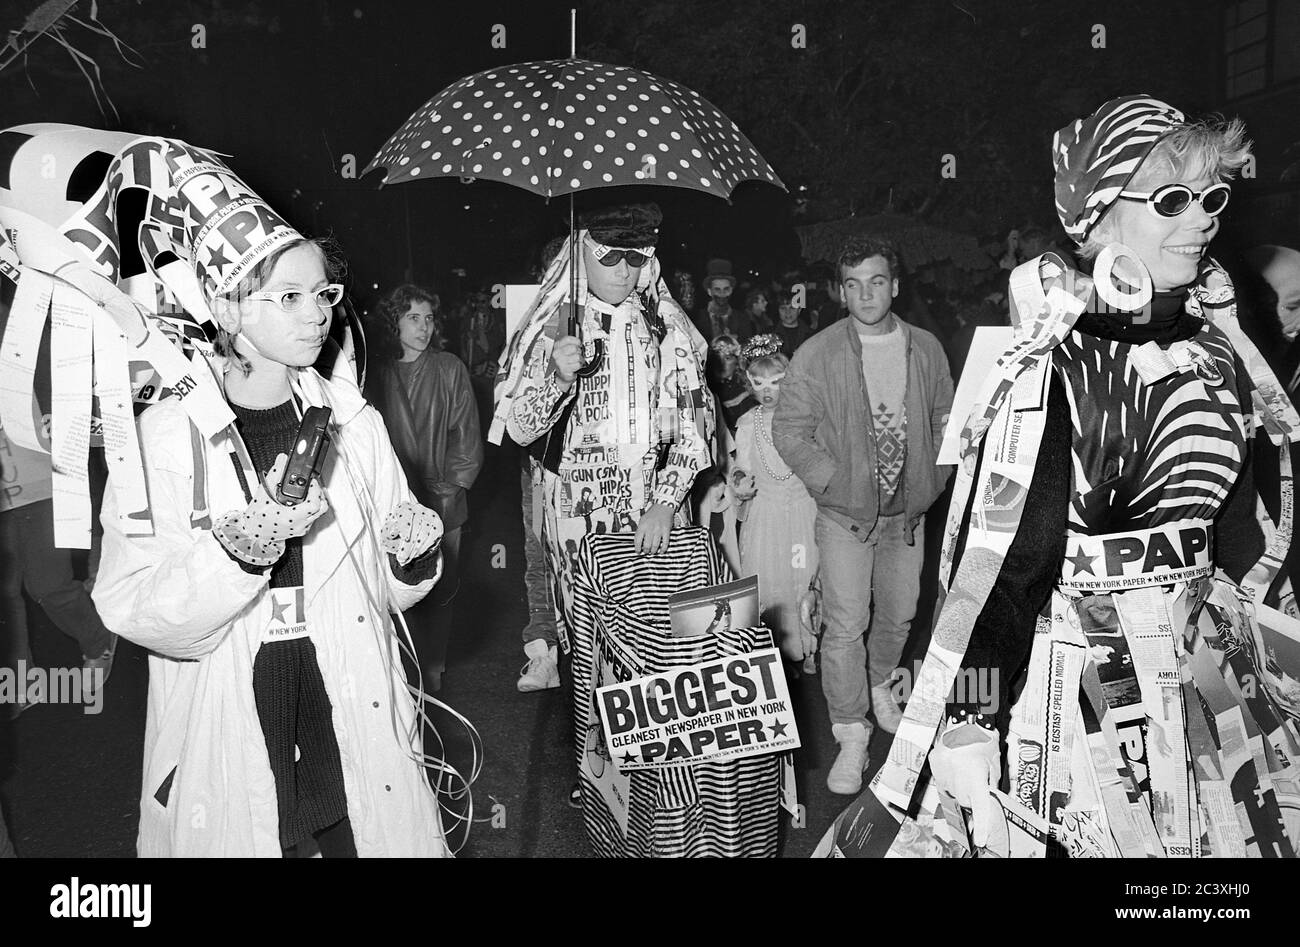 Persone che lavorano per LA CARTA al Greenwich Village Halloween Parade, New York City, USA negli anni '80 fotografato con film in bianco e nero di notte. Foto Stock